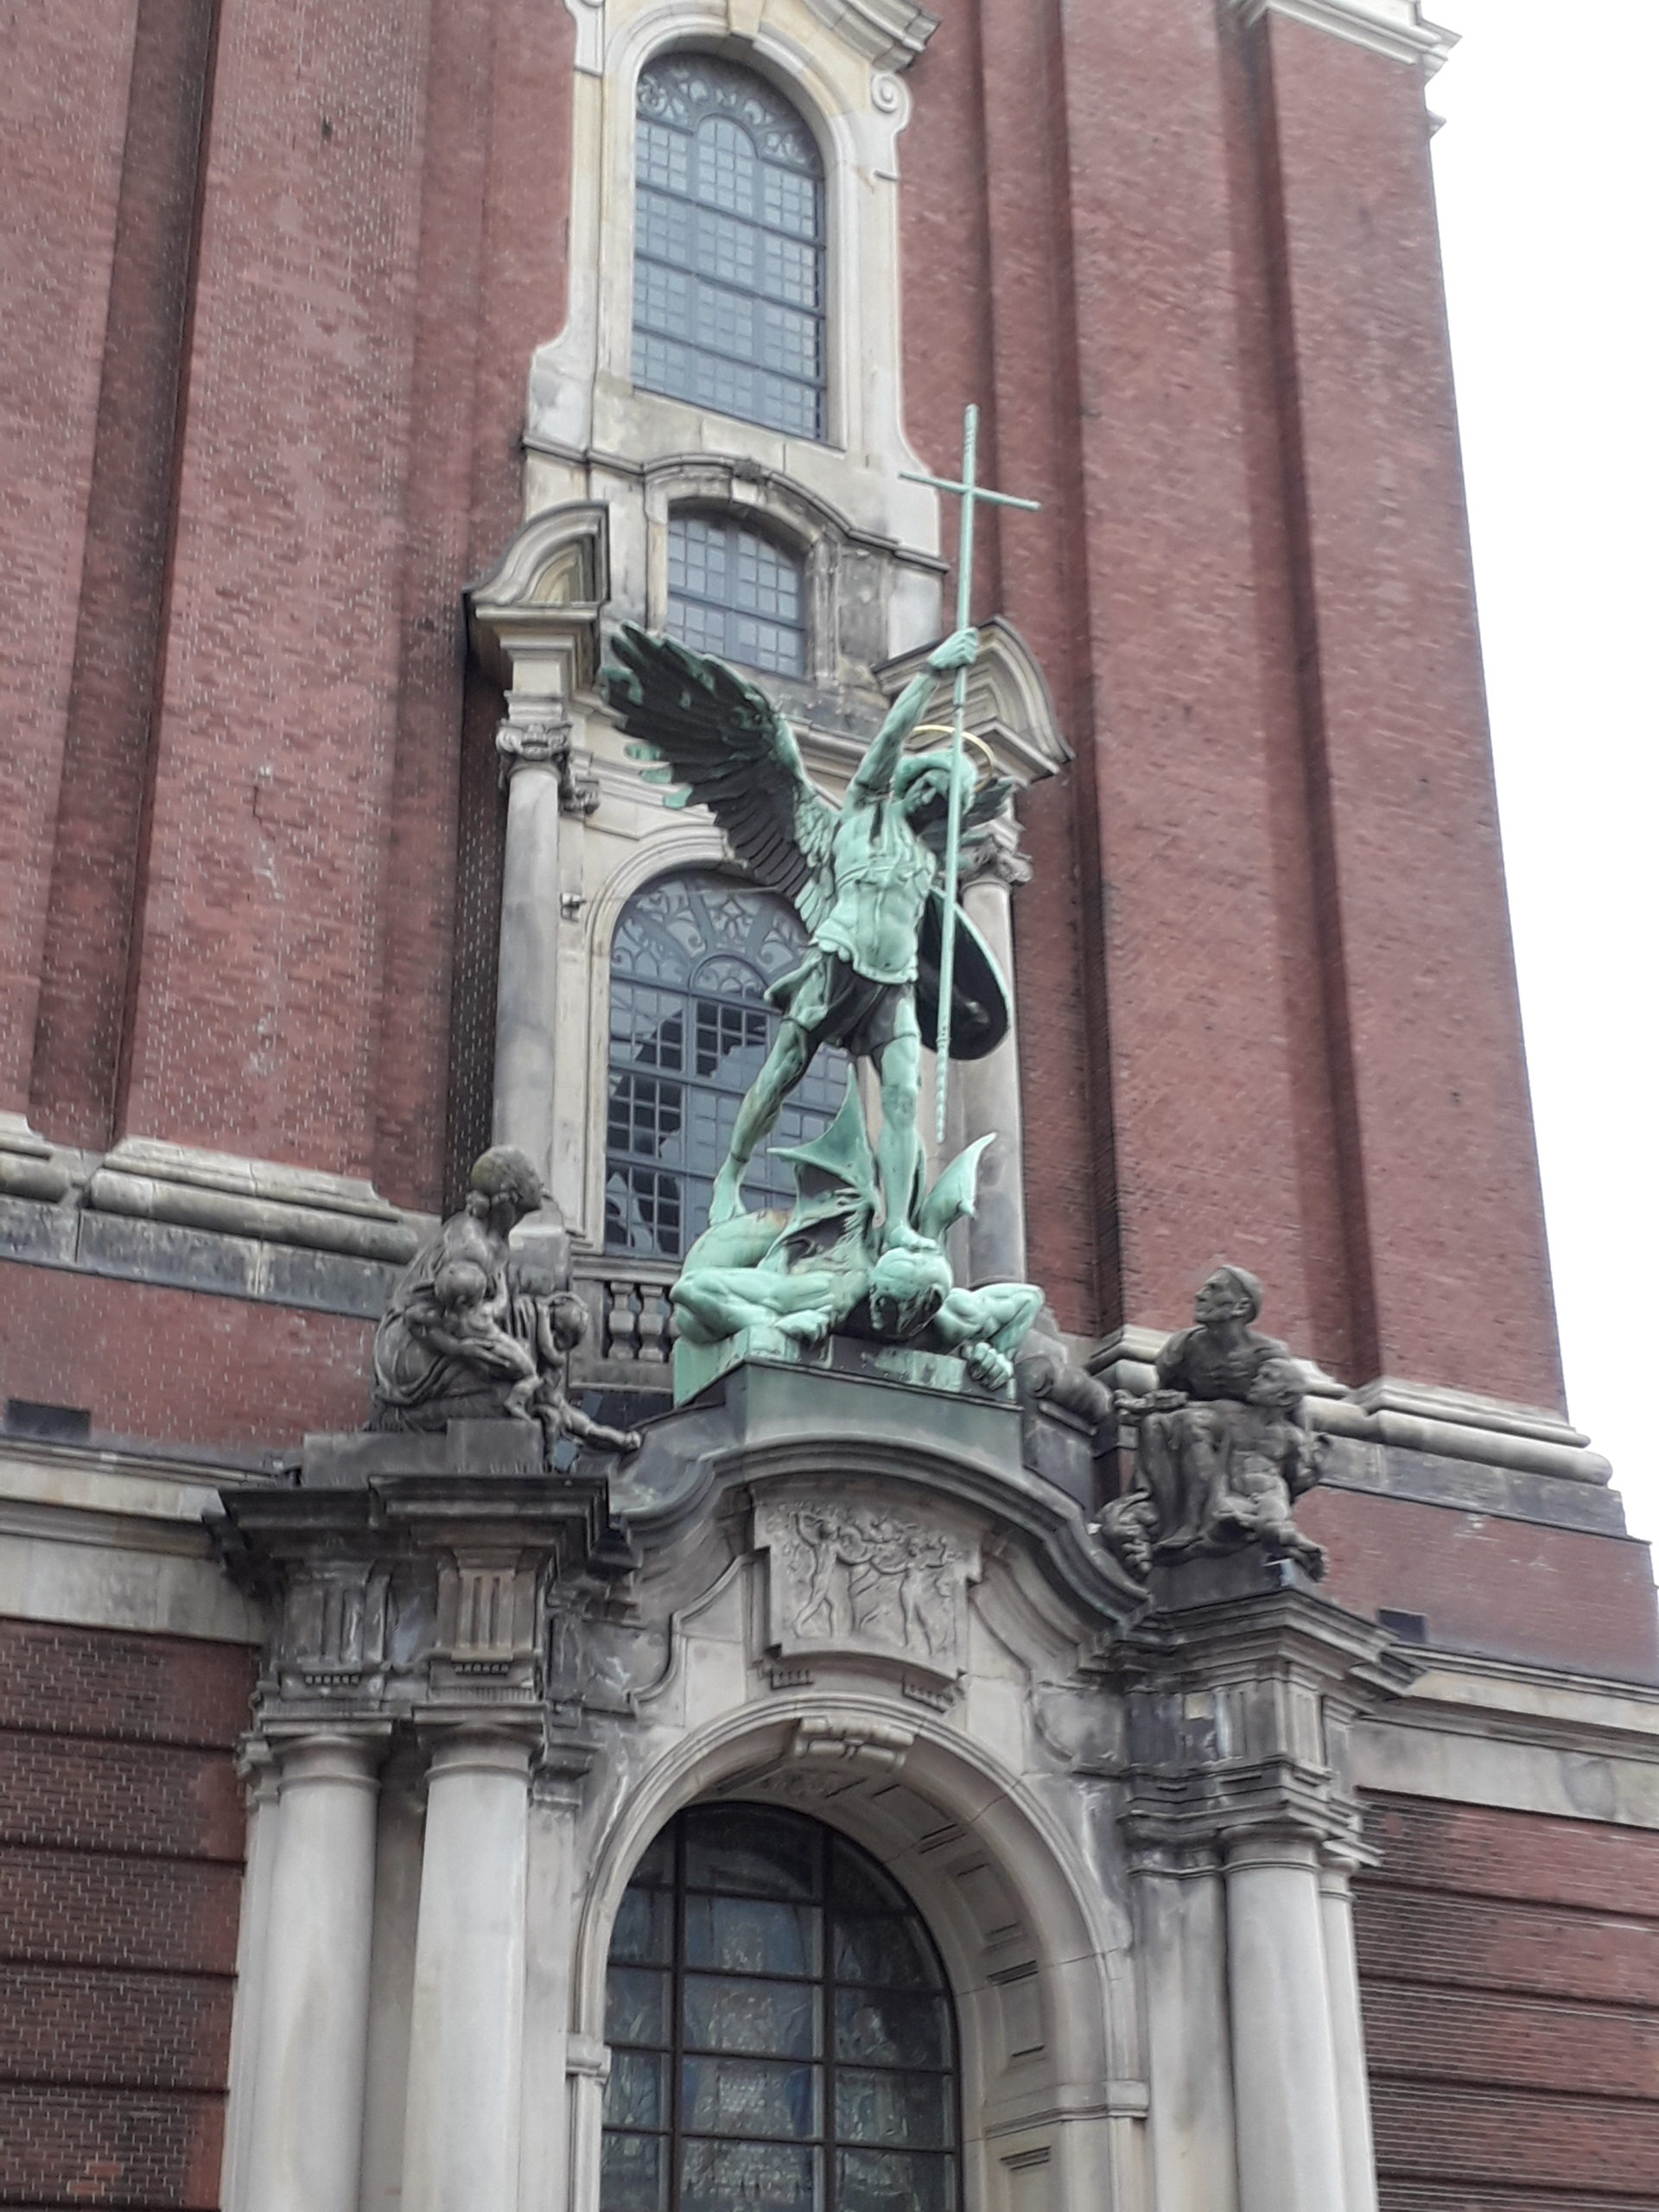 Erzengel Michael tötet den Drachen Stockfotos. Der heißt wirklich so. :-) Eines von vielen Details an der Kirche St. Michael. Foto: Peter Klohs